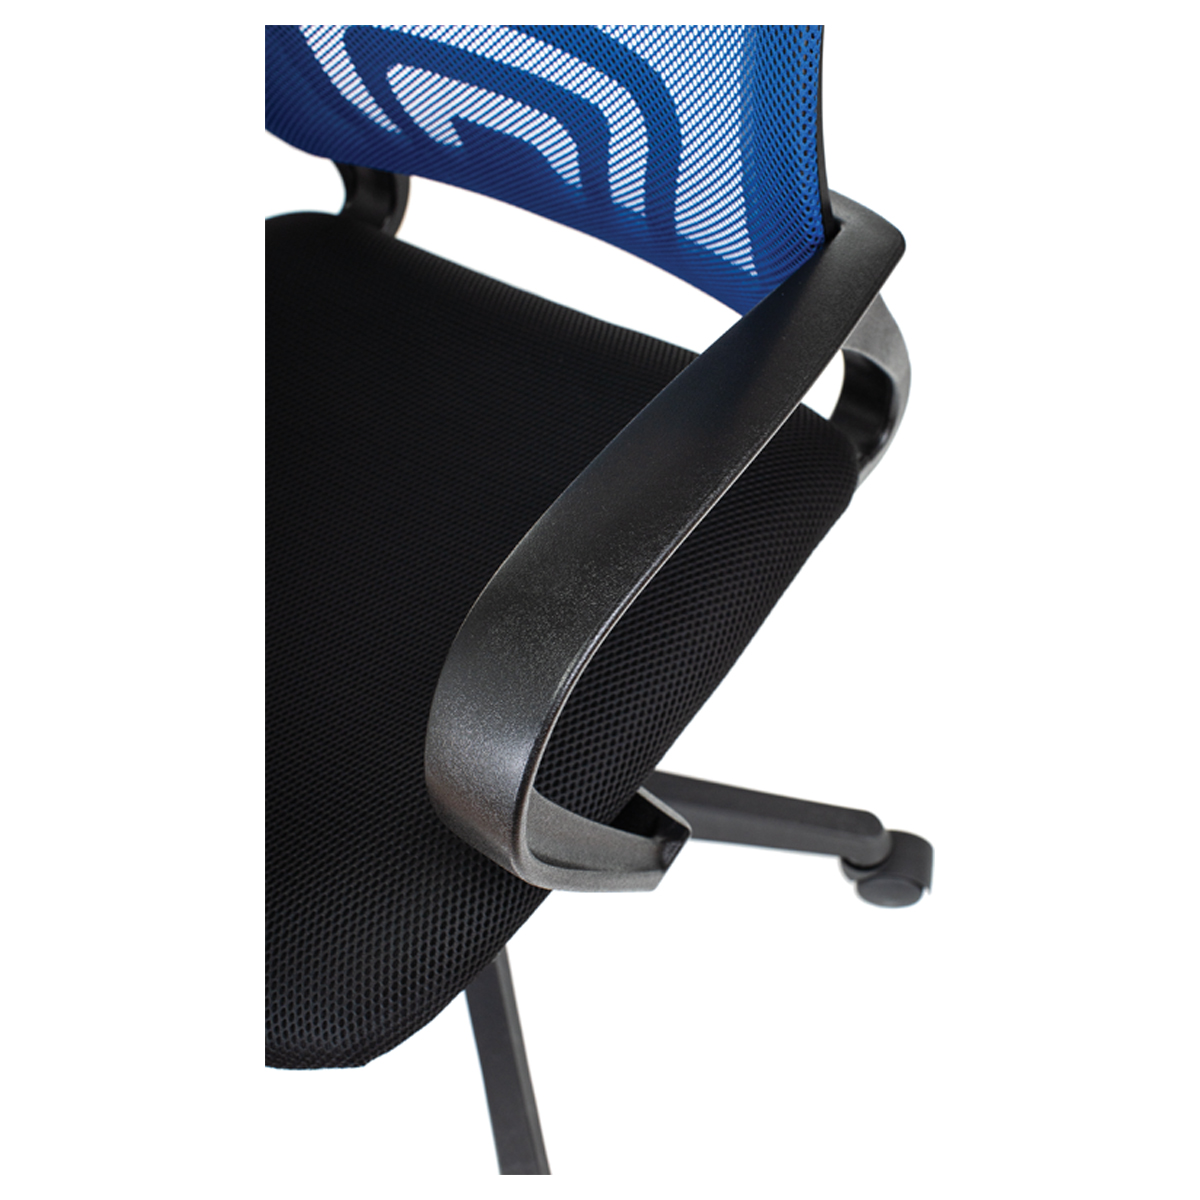 Кресло оператора Helmi HL-M95 (695) "Airy", спинка сетка синяя/сиденье ткань TW черная, механизм кач